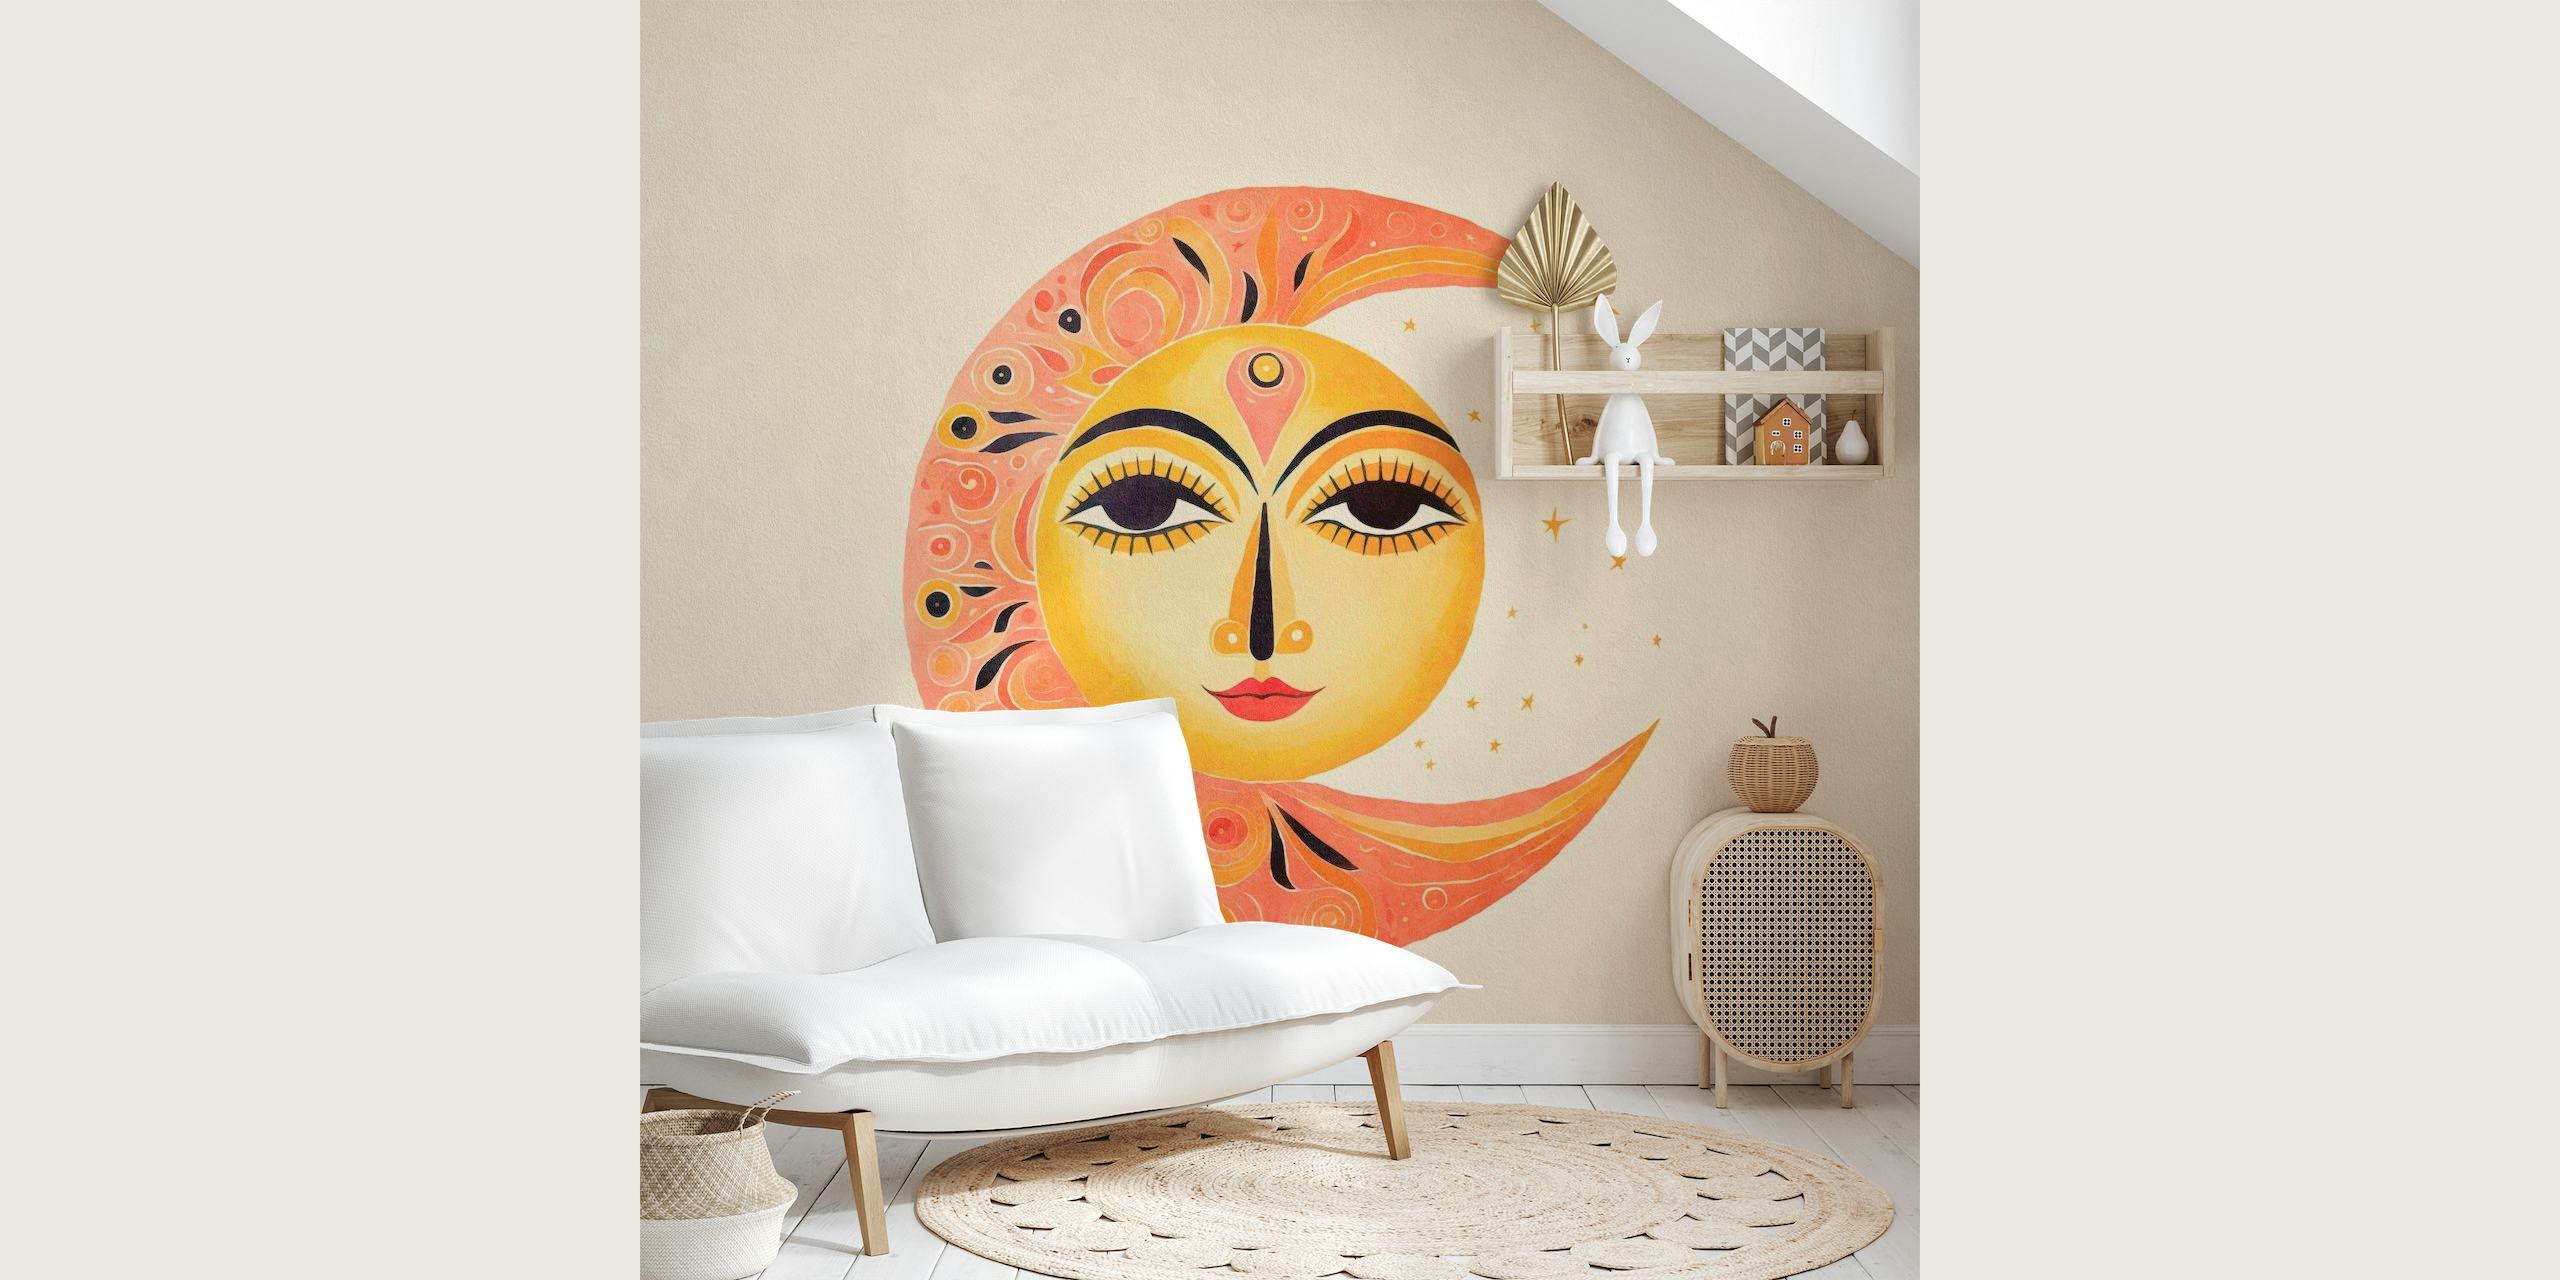 Lunefuldt sol-måne-ansigt-vægmaleri med harmonisk sol- og månedesign